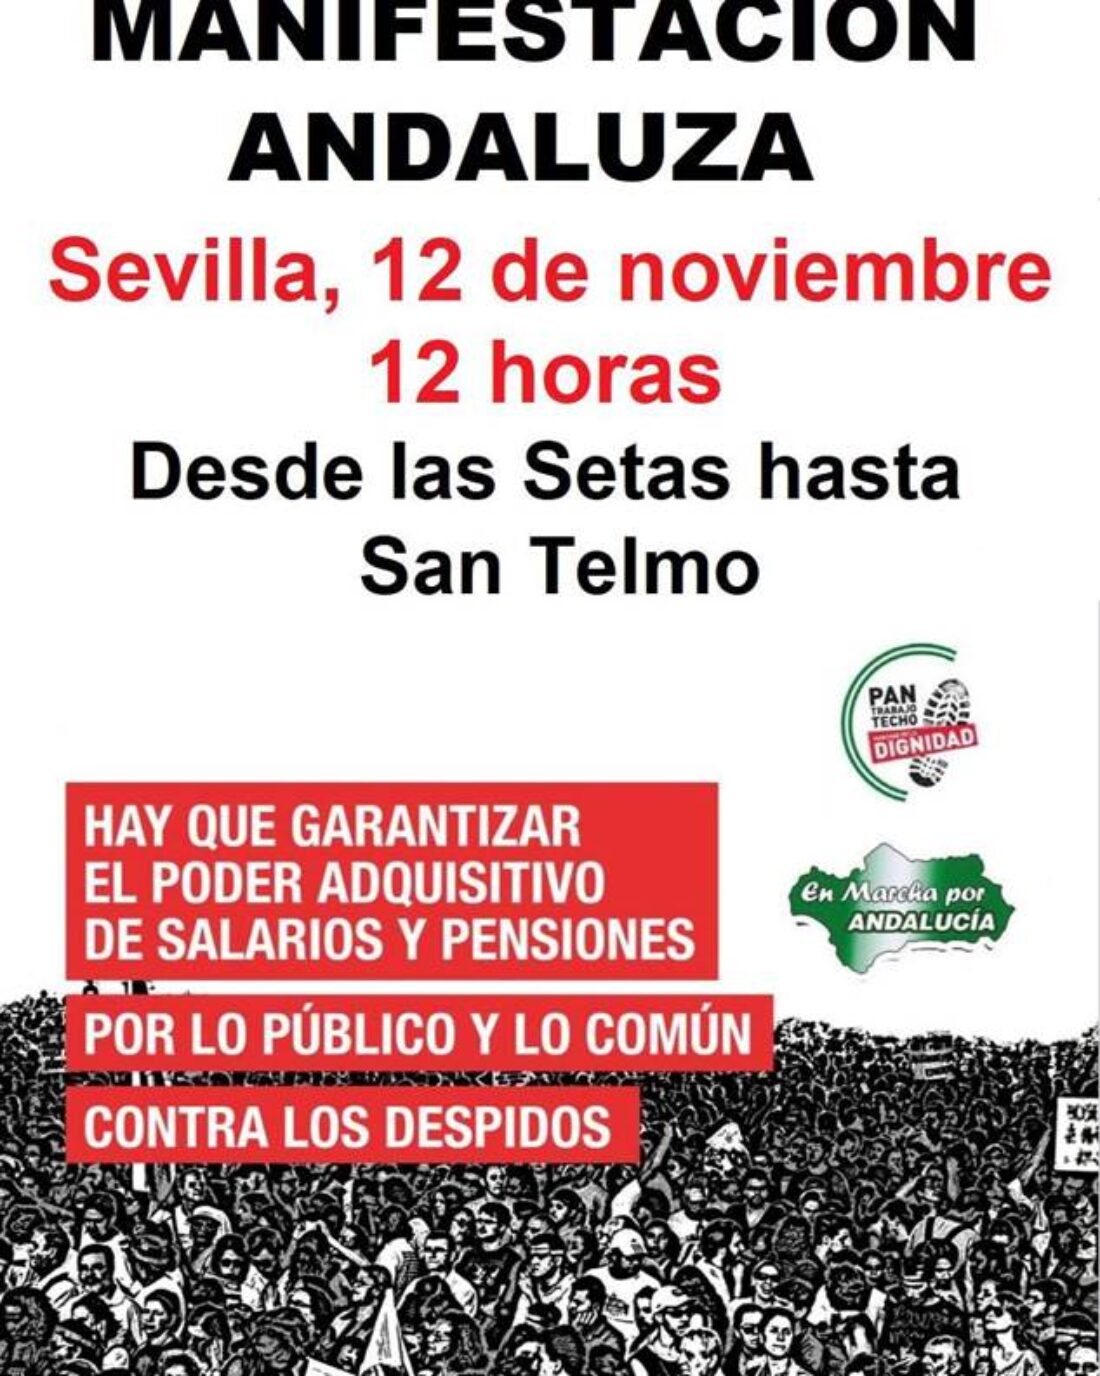 Manifestación andaluza en Sevilla para Garantizar el poder adquisitivo de salarios y pensiones. Por lo público y por lo común. Contra los despidos